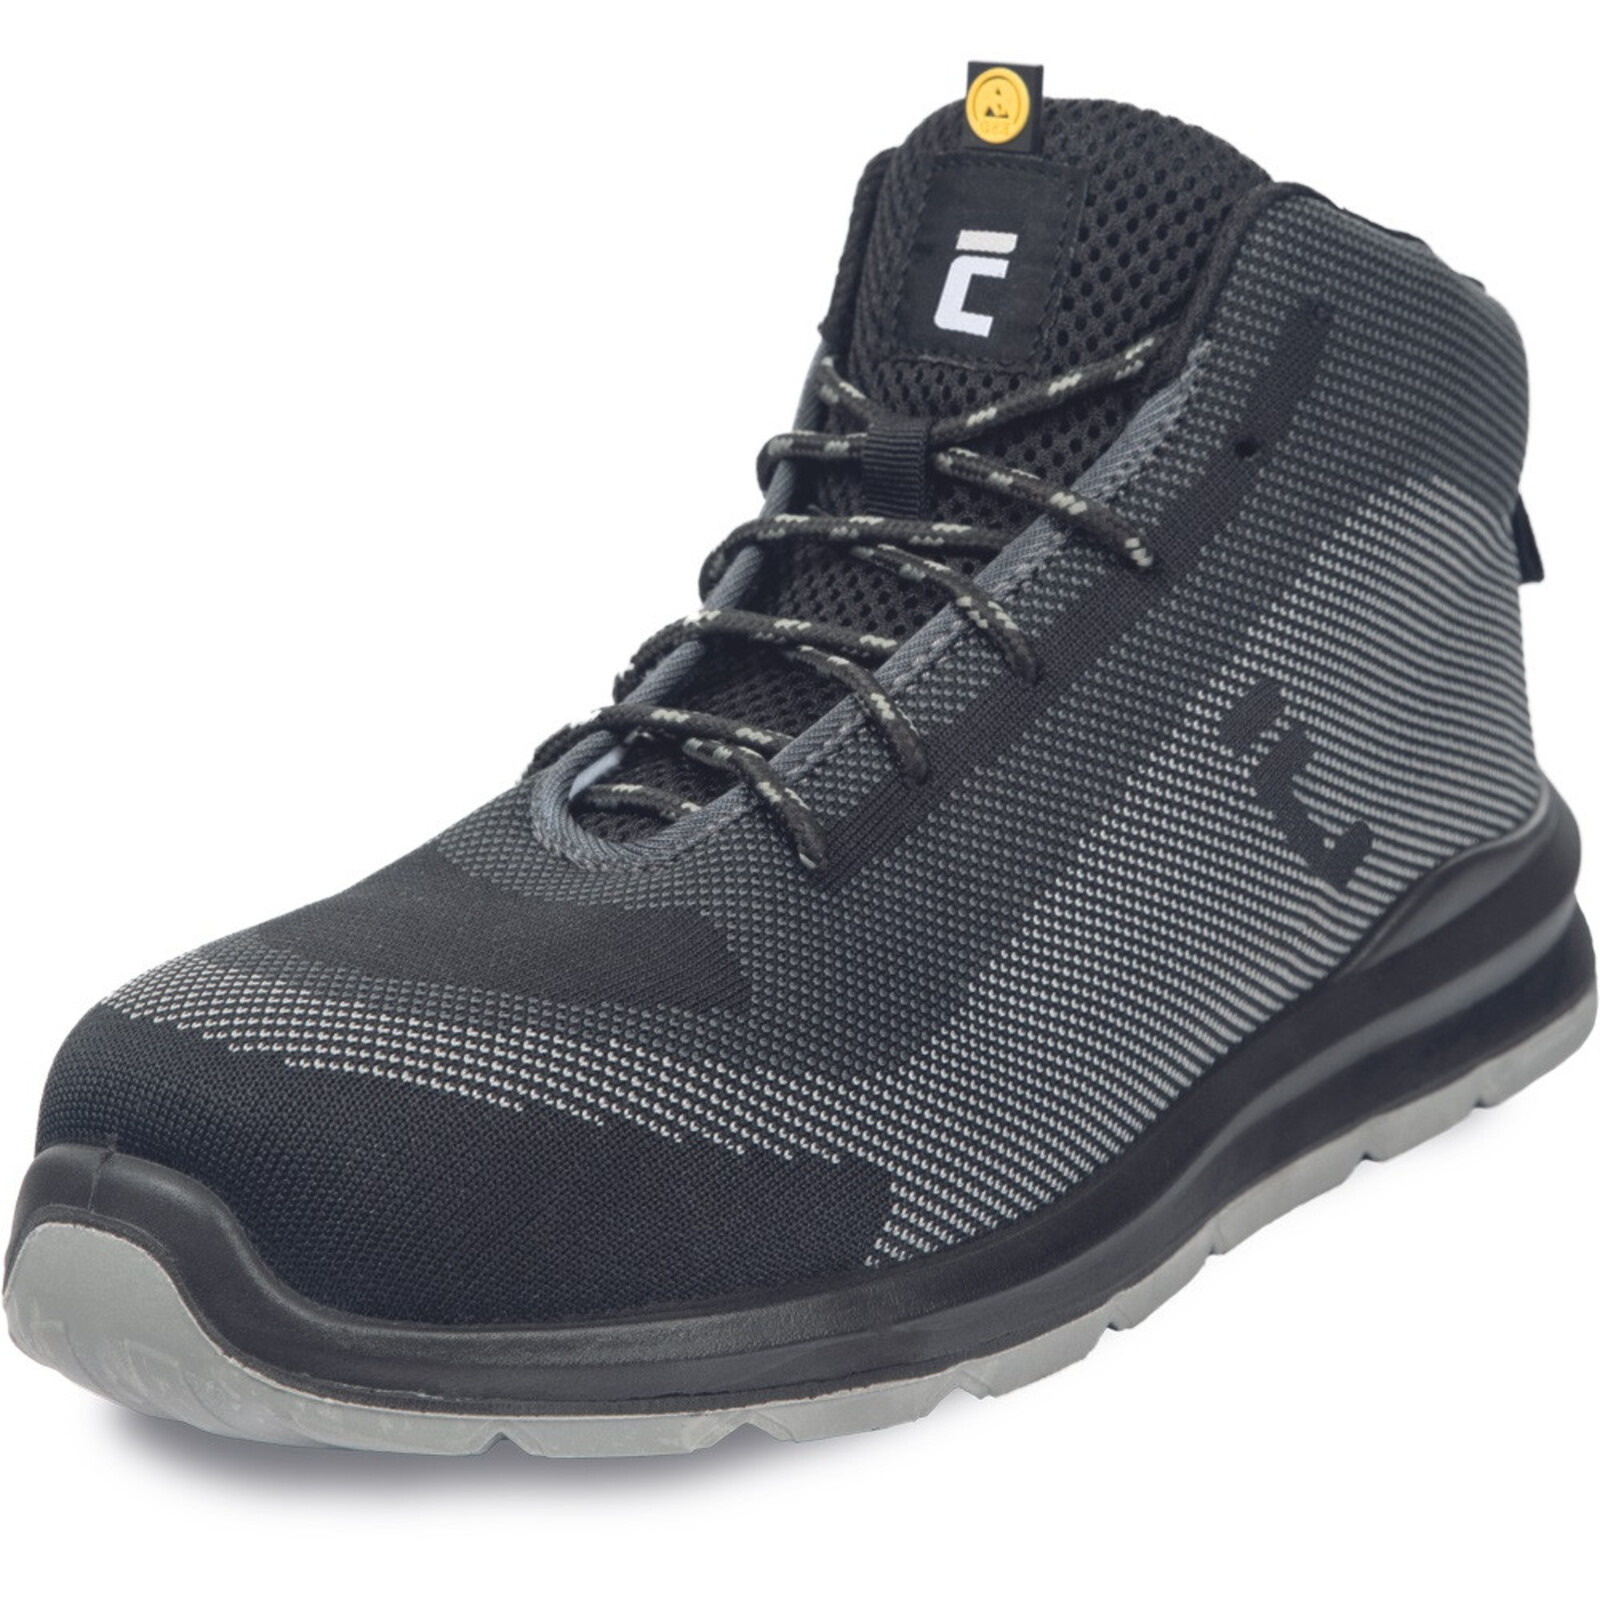 Bezpečnostná členková obuv Cerva Vadorros S1P MF ESD SRC - veľkosť: 37, farba: sivá/čierna